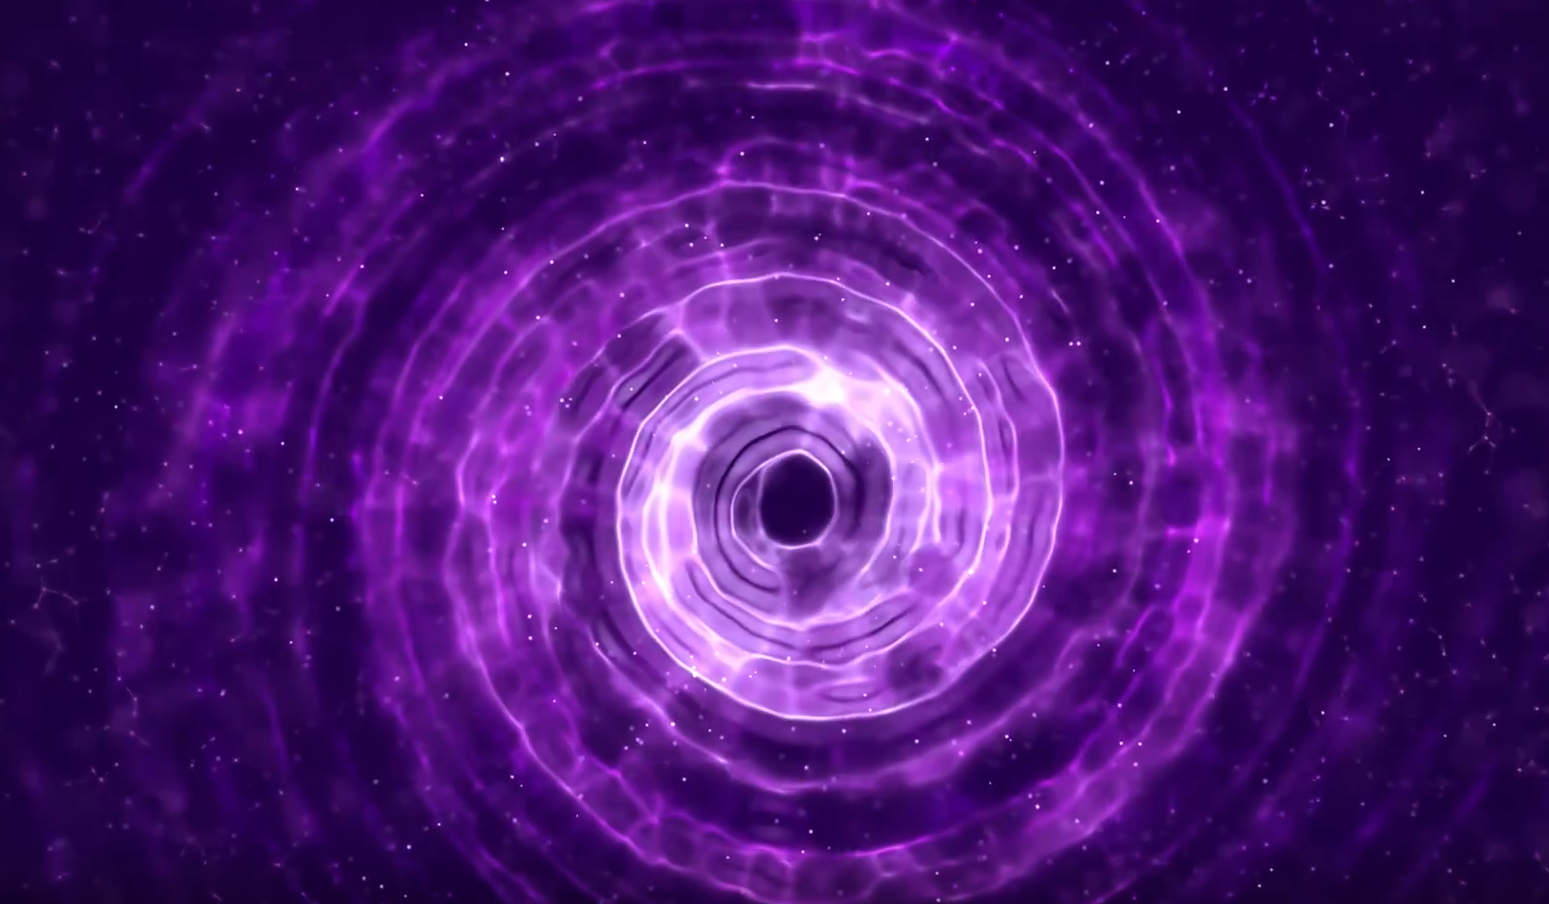 唯美的紫色星云旋转粒子飞舞消散舞台led大屏视频素材-92素材网